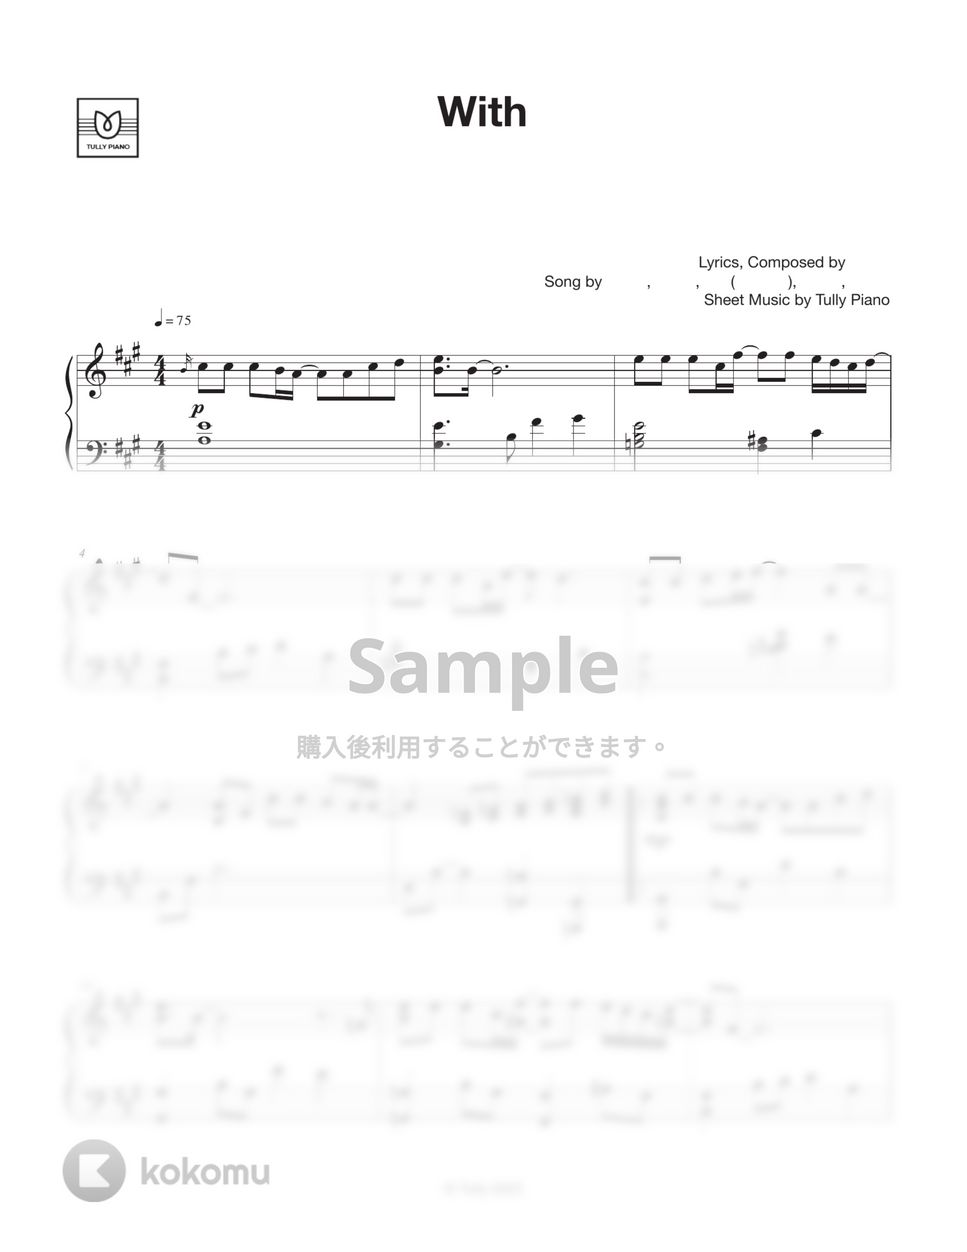 스물다섯 스물하나 OST. (김태리, 남주혁 외 3명) - With by Tully Piano